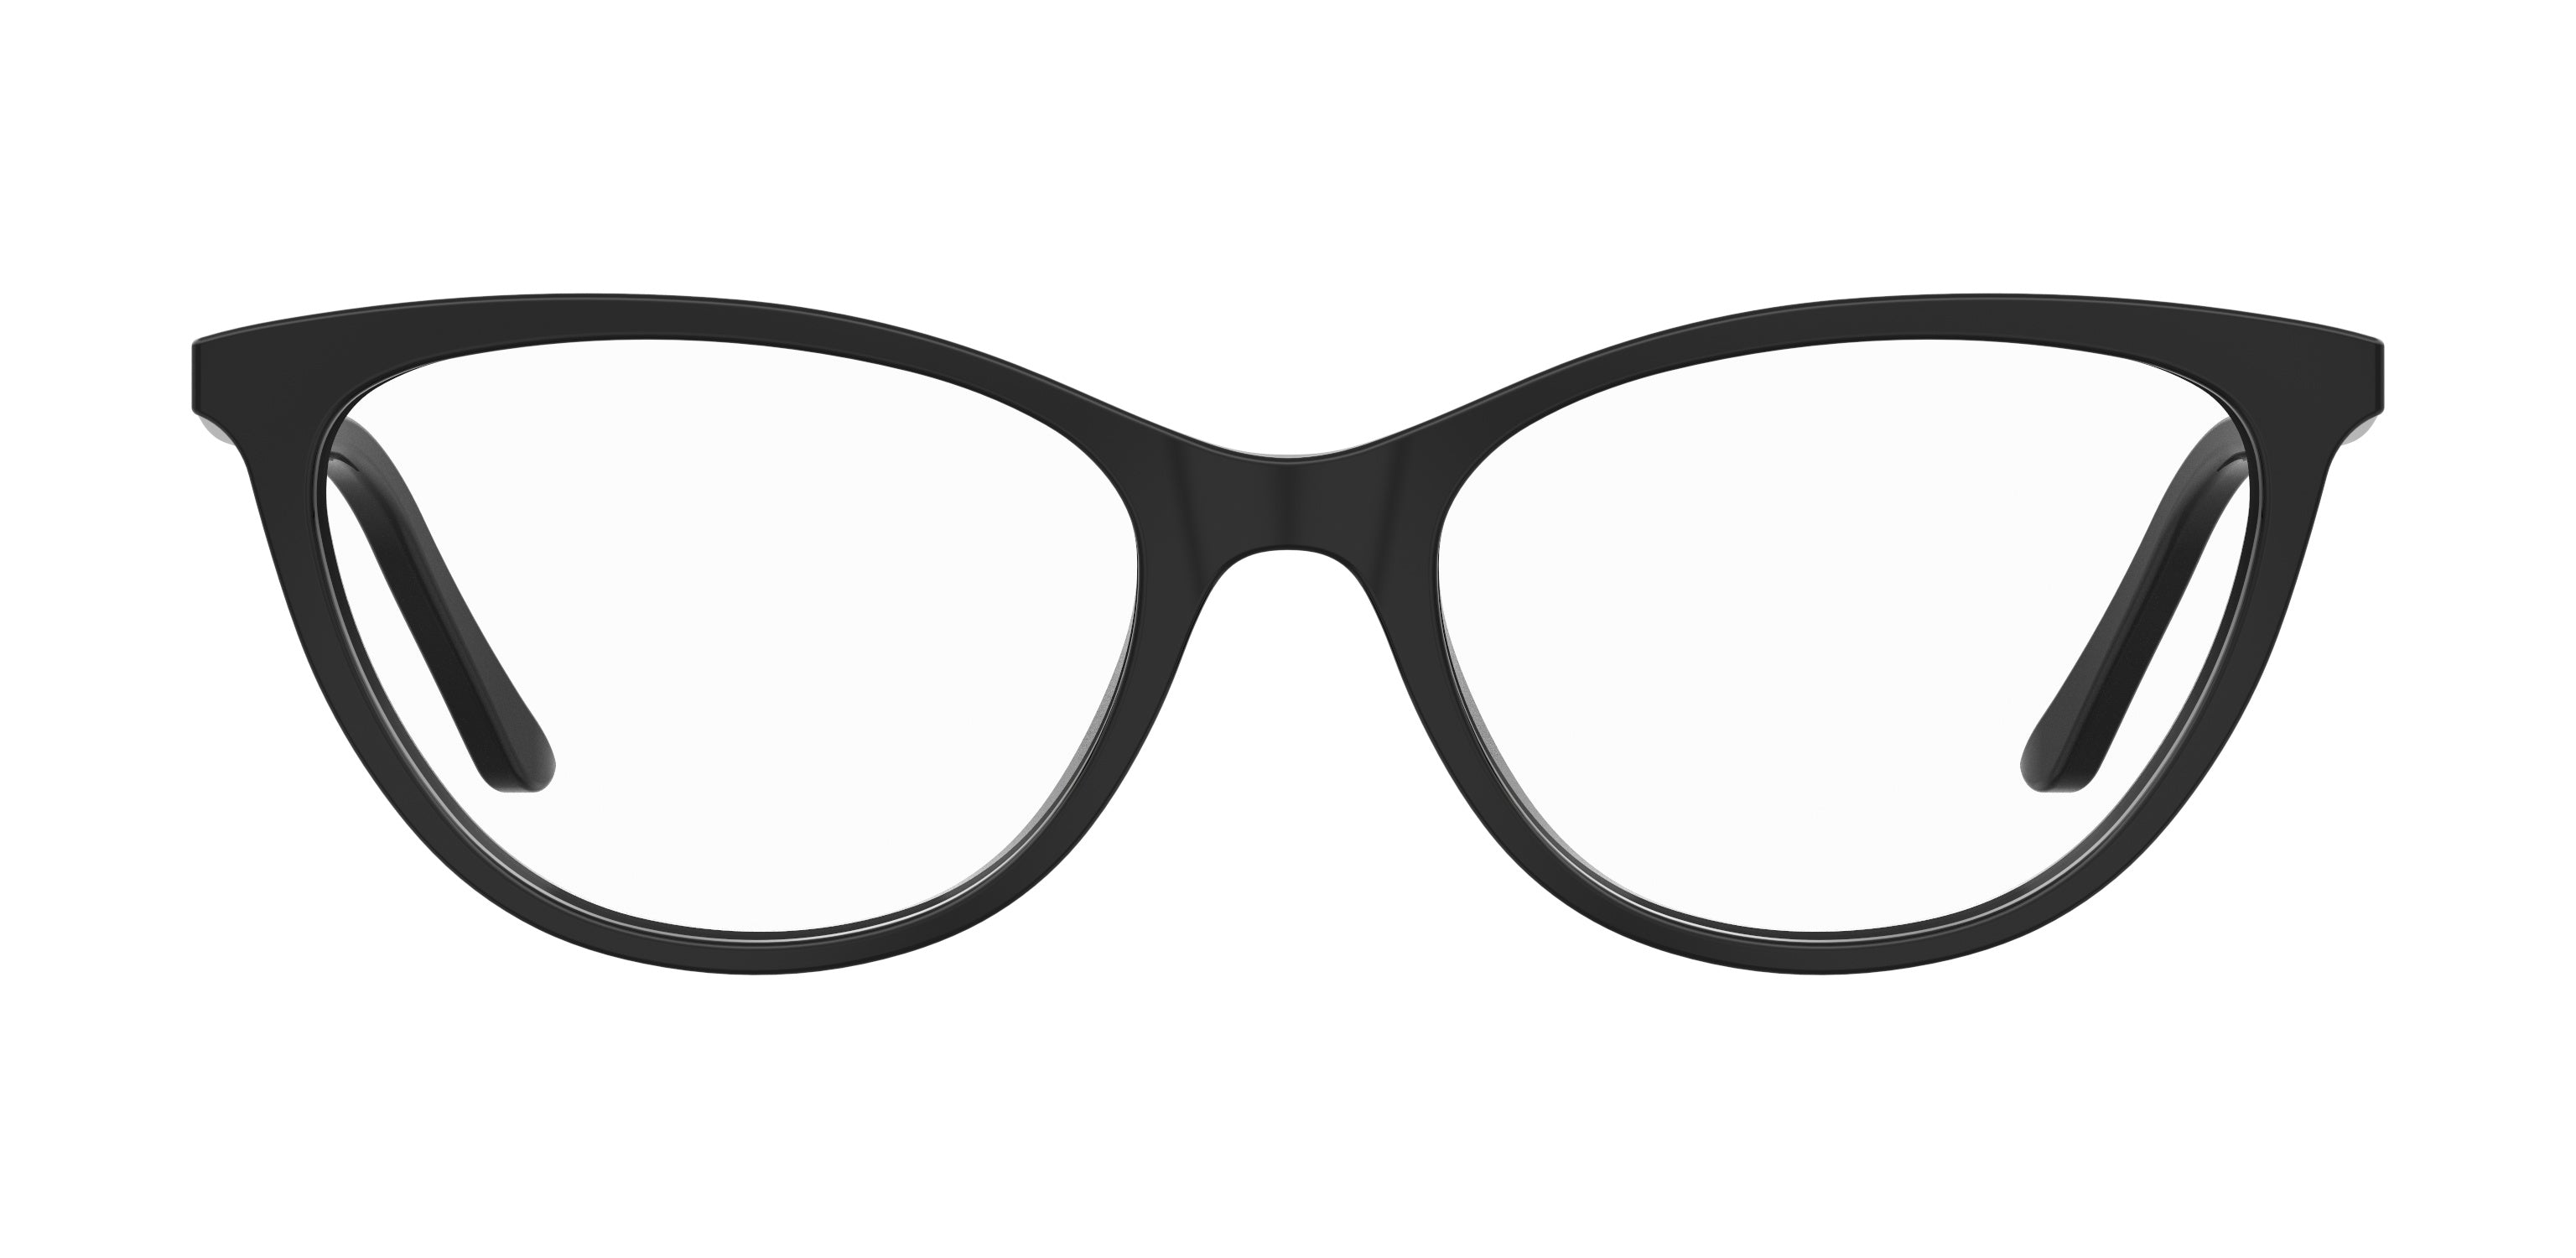 Sunglasses,specsmart, spec smart, glasses, eye glasses glasses frames, where to get glasses in lagos, eye treatment, wellness health care group, 7TH STREET S 319